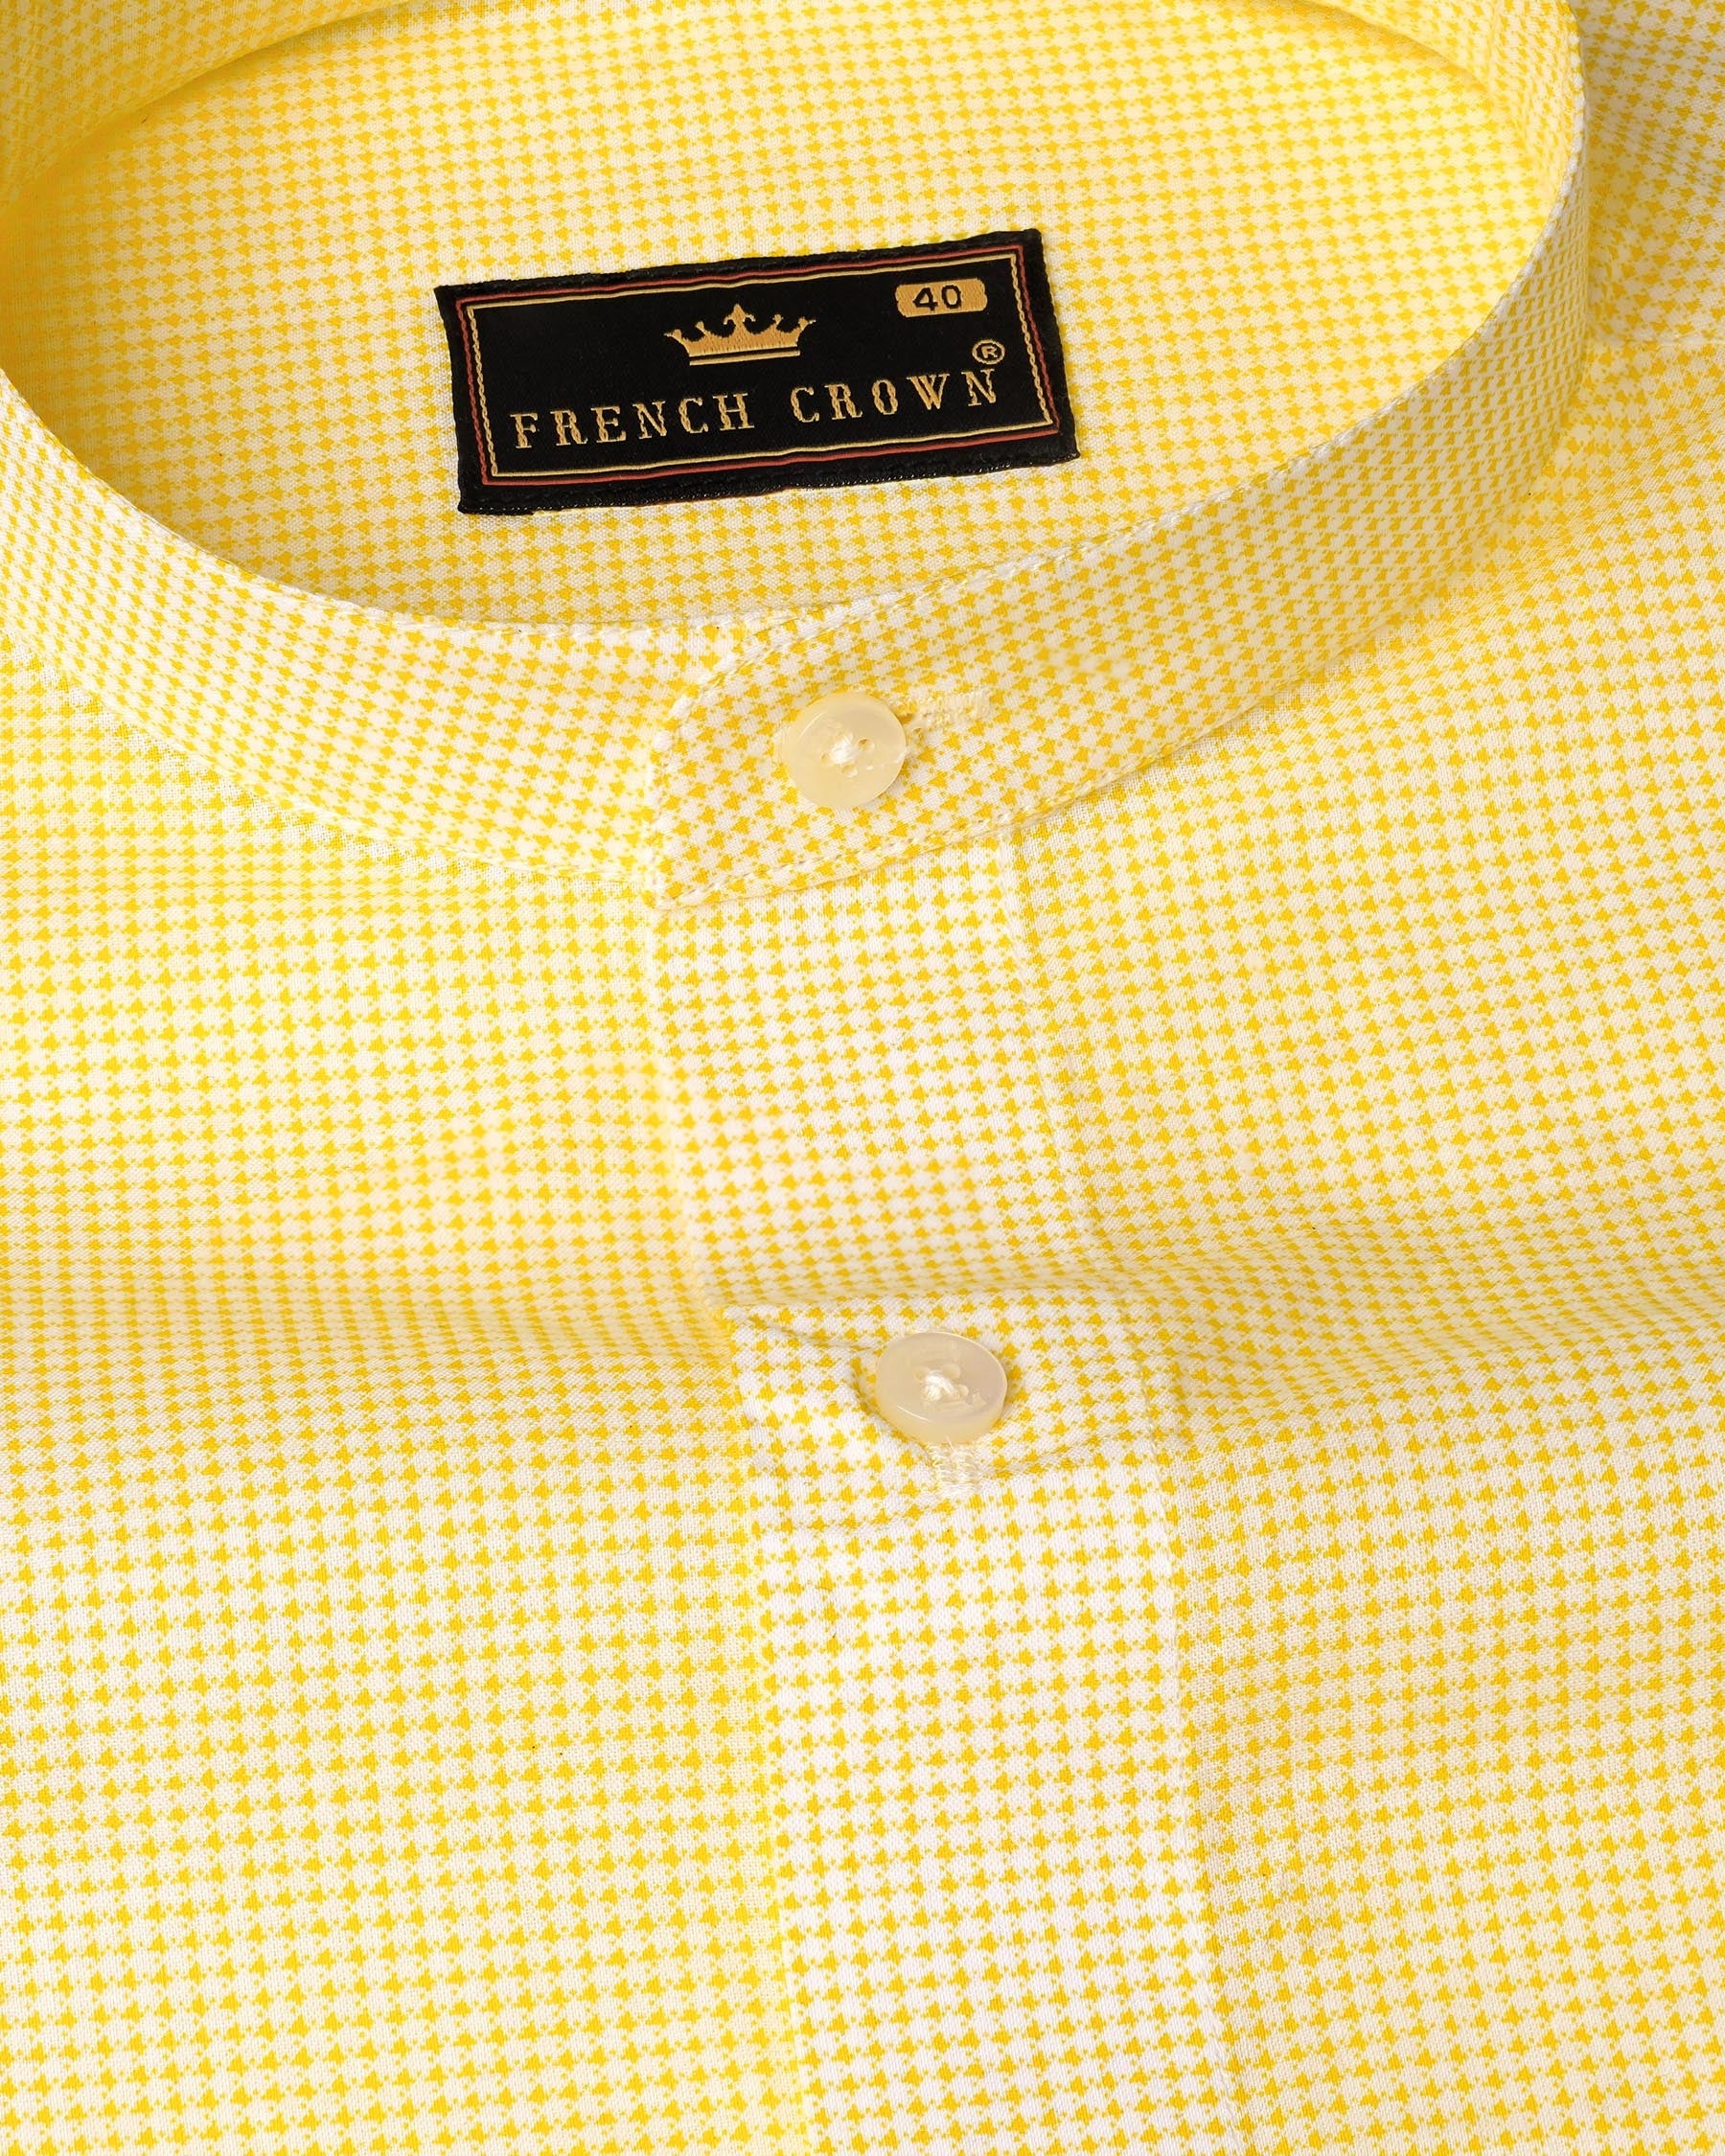 Dandelion Yellow and Bright White Mini Checkered Premium Cotton Shirt 7980-M-38,7980-M-H-38,7980-M-39,7980-M-H-39,7980-M-40,7980-M-H-40,7980-M-42,7980-M-H-42,7980-M-44,7980-M-H-44,7980-M-46,7980-M-H-46,7980-M-48,7980-M-H-48,7980-M-50,7980-M-H-50,7980-M-52,7980-M-H-52